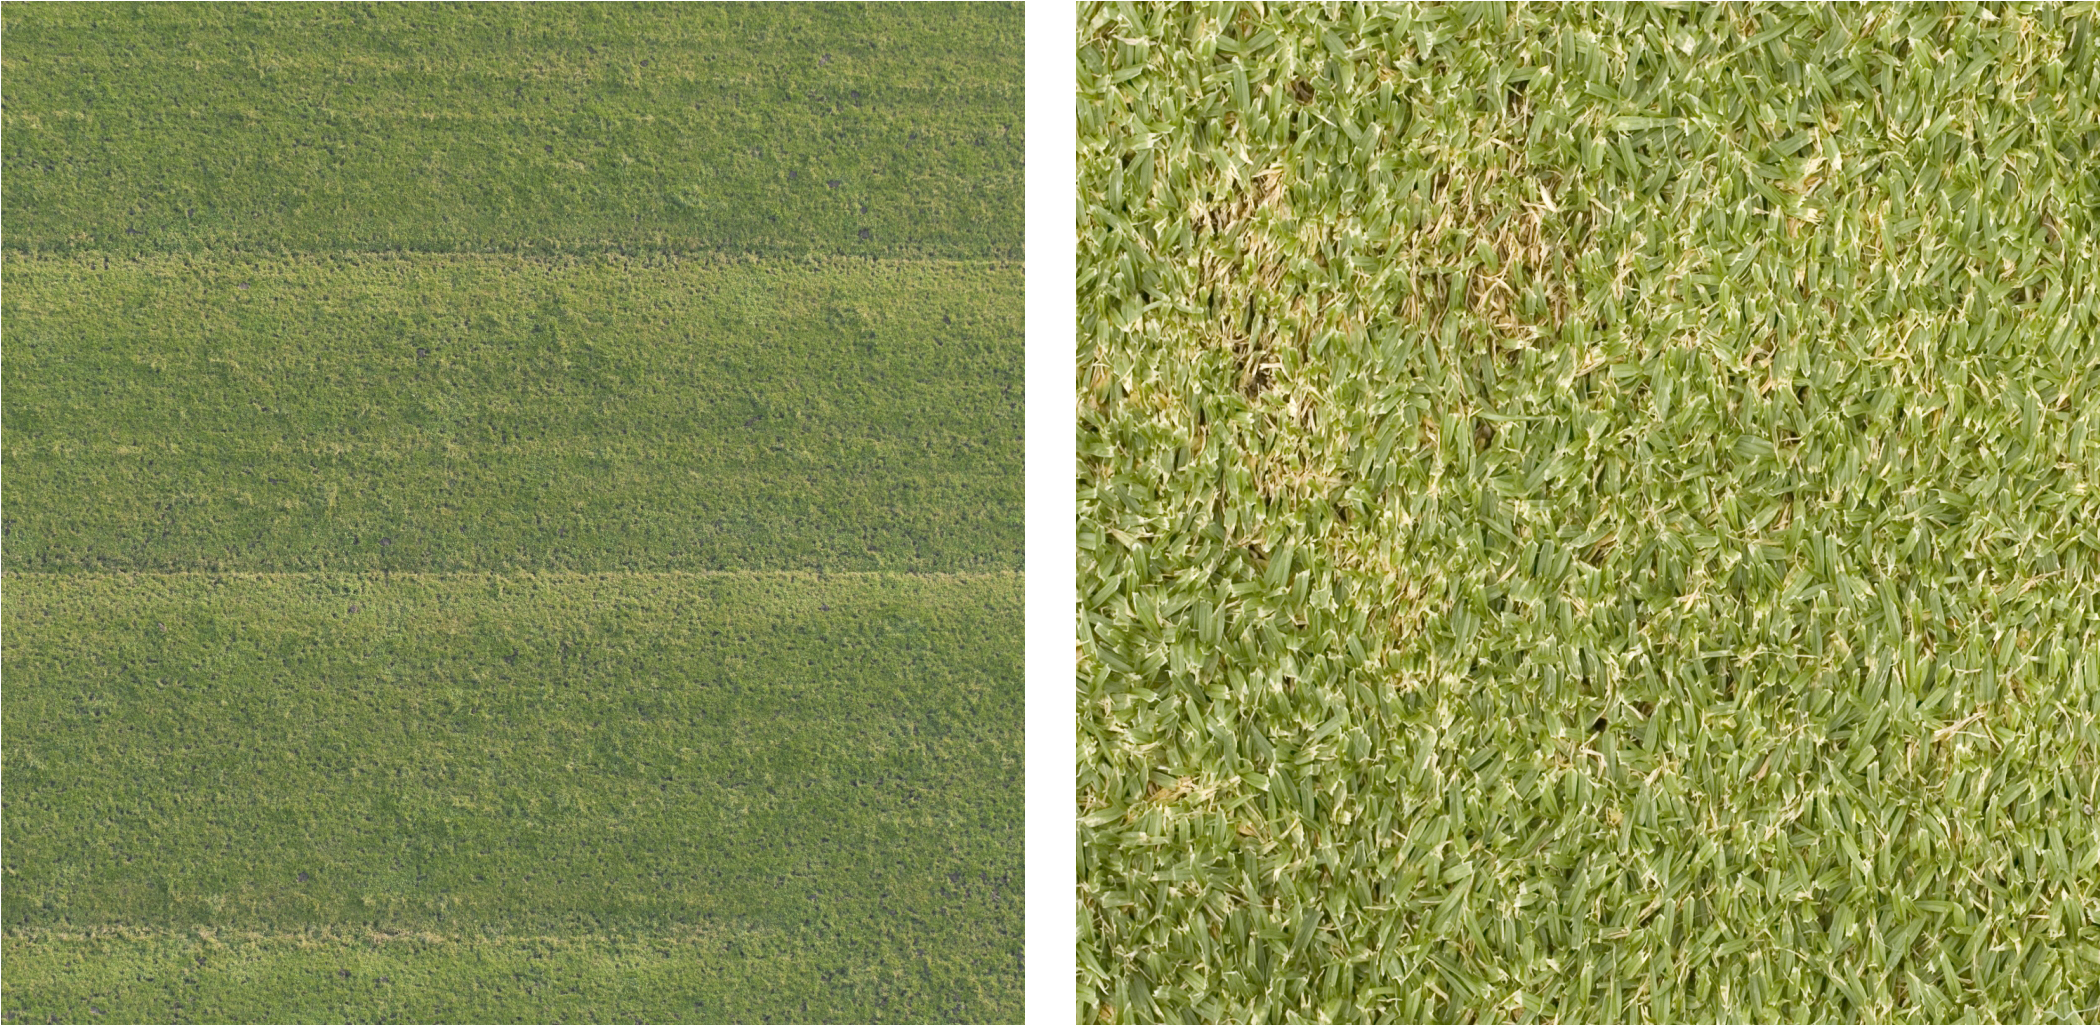 Lawn Grass Textures Comparison